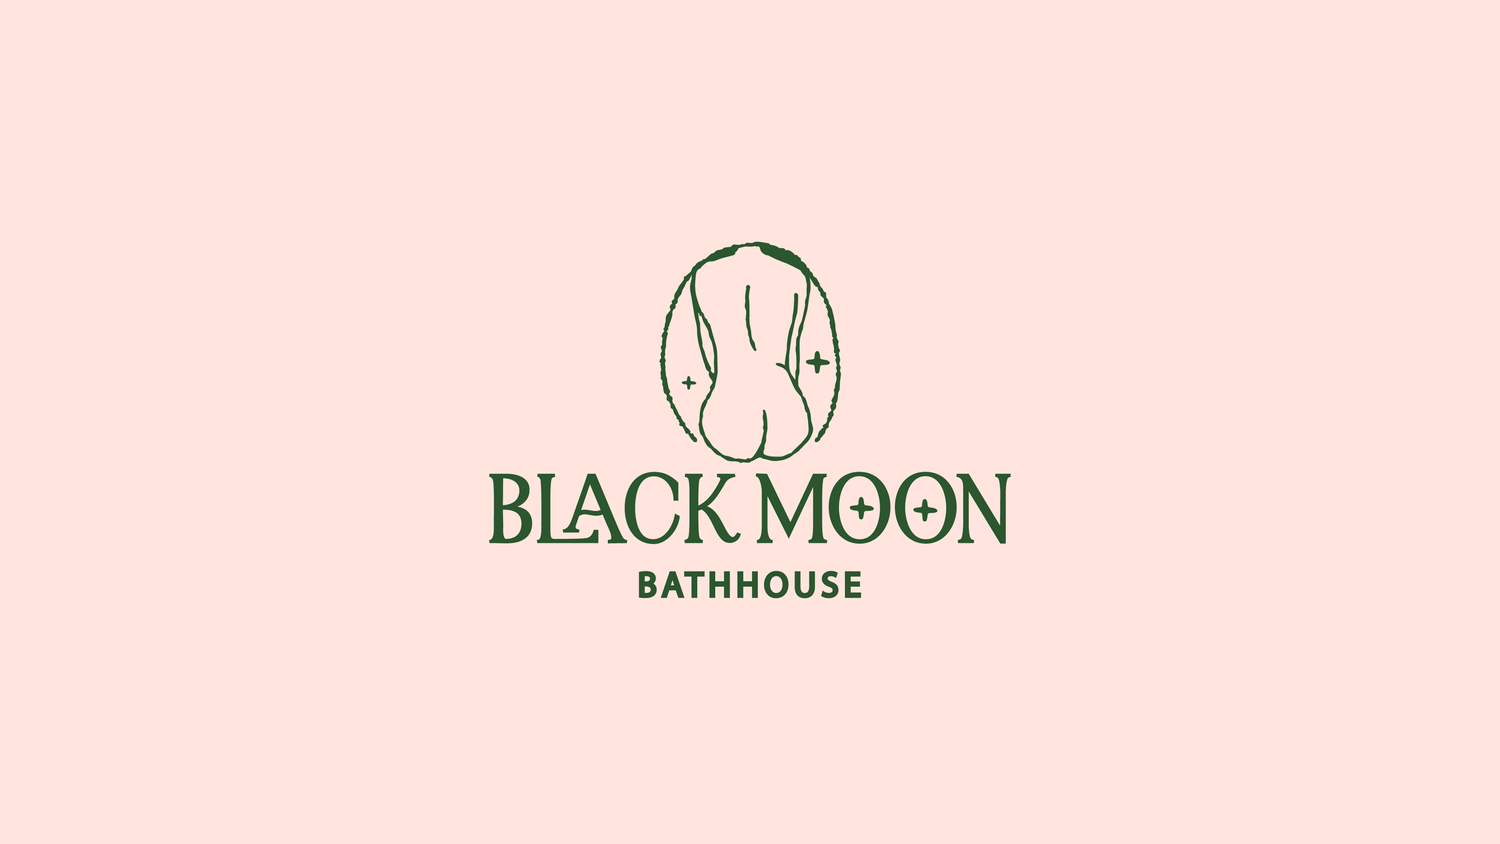 Black Moon Bathhouse